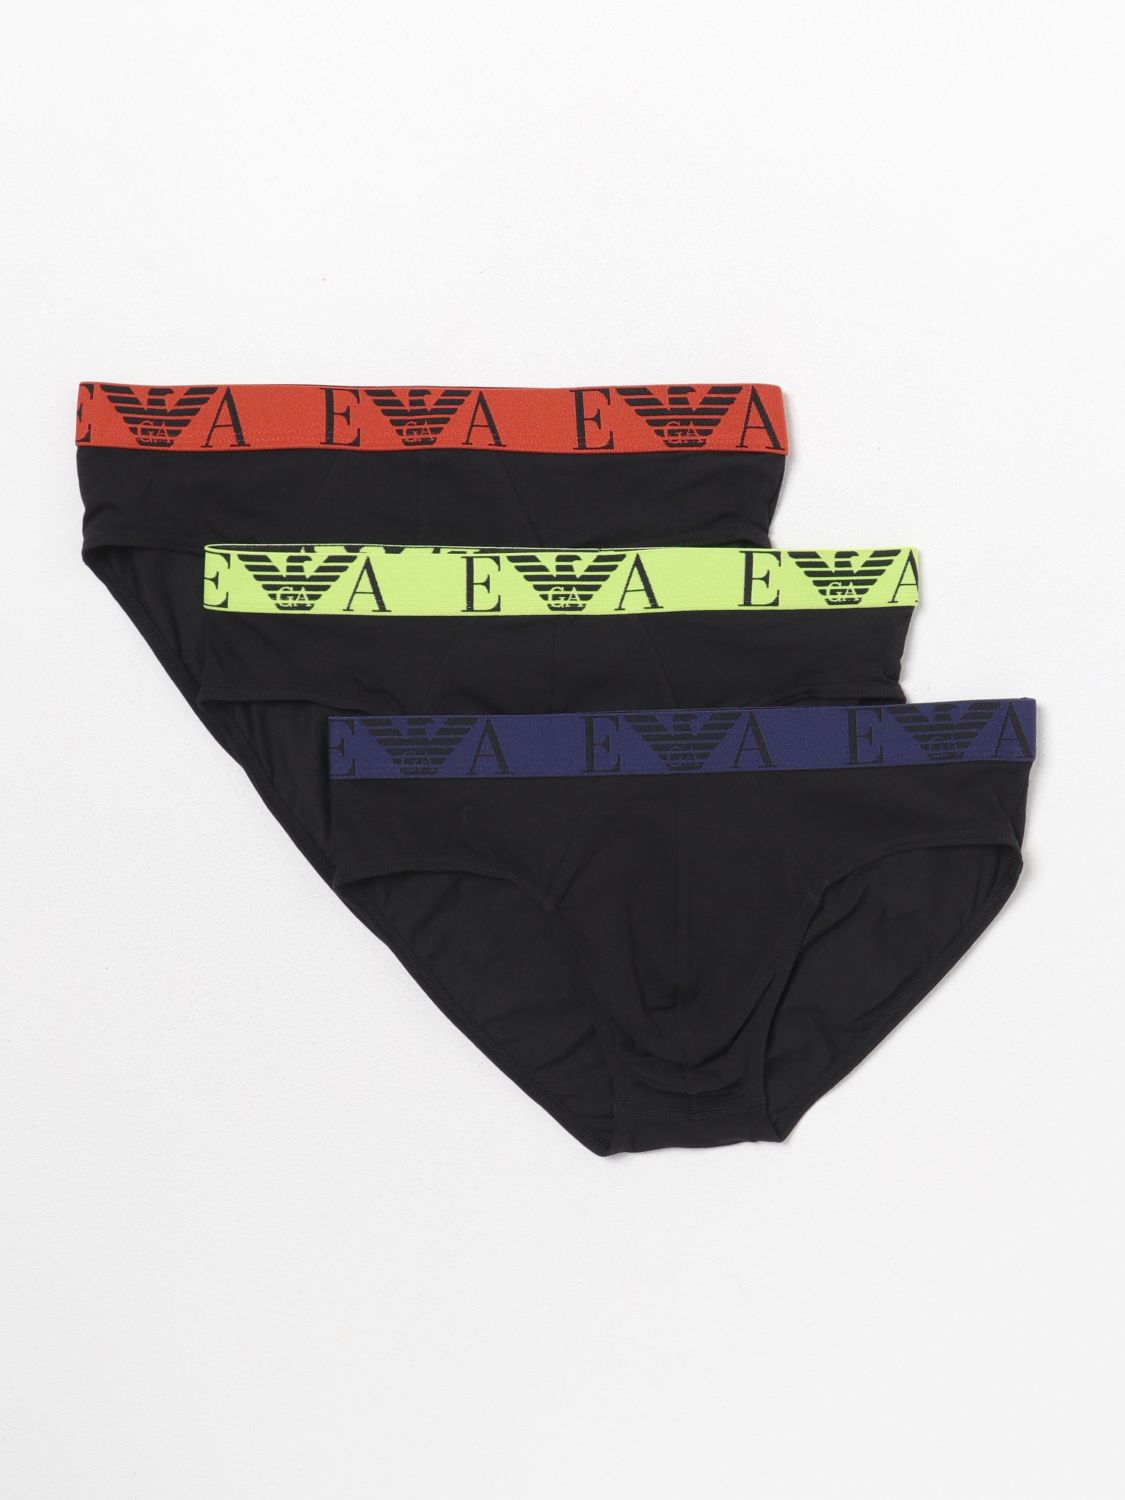 Emporio Armani Underwear Underwear EMPORIO ARMANI UNDERWEAR Men colour Black